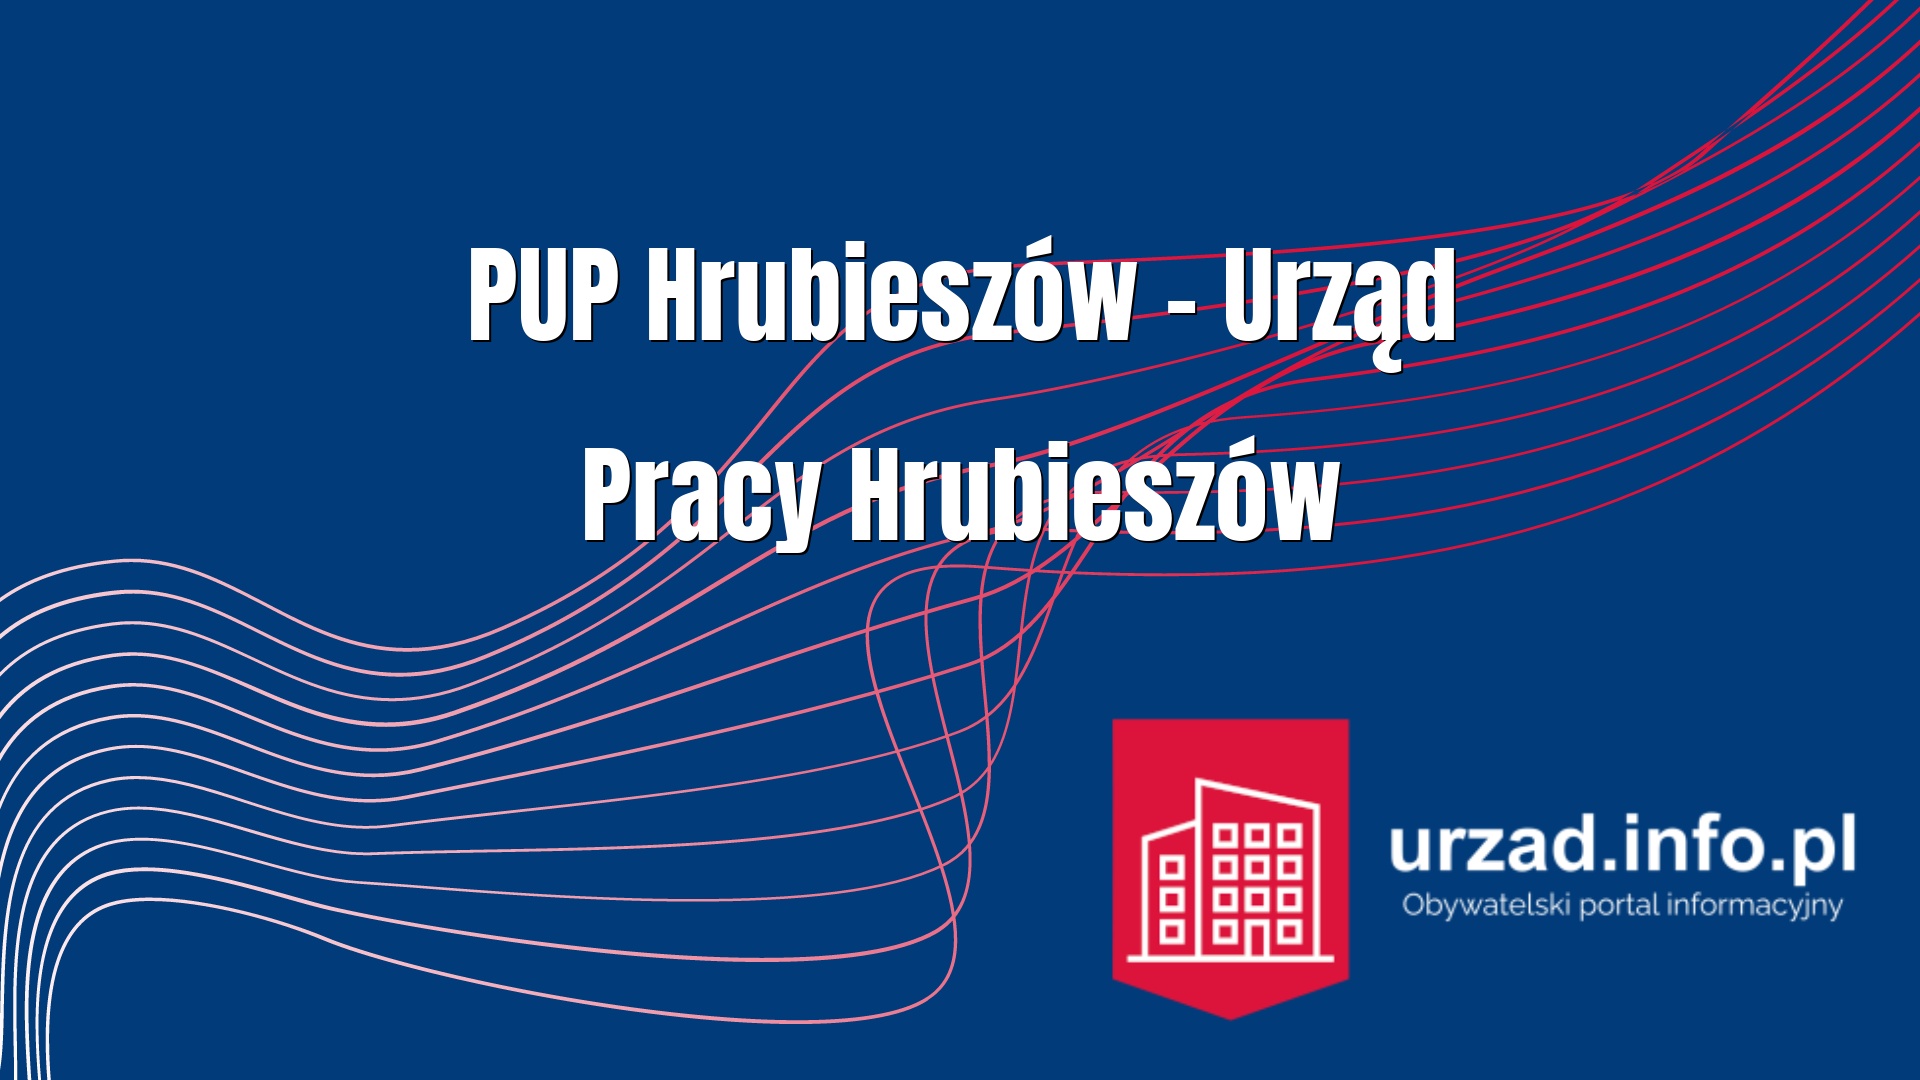 PUP Hrubieszów – Powiatowy Urząd Pracy Hrubieszów